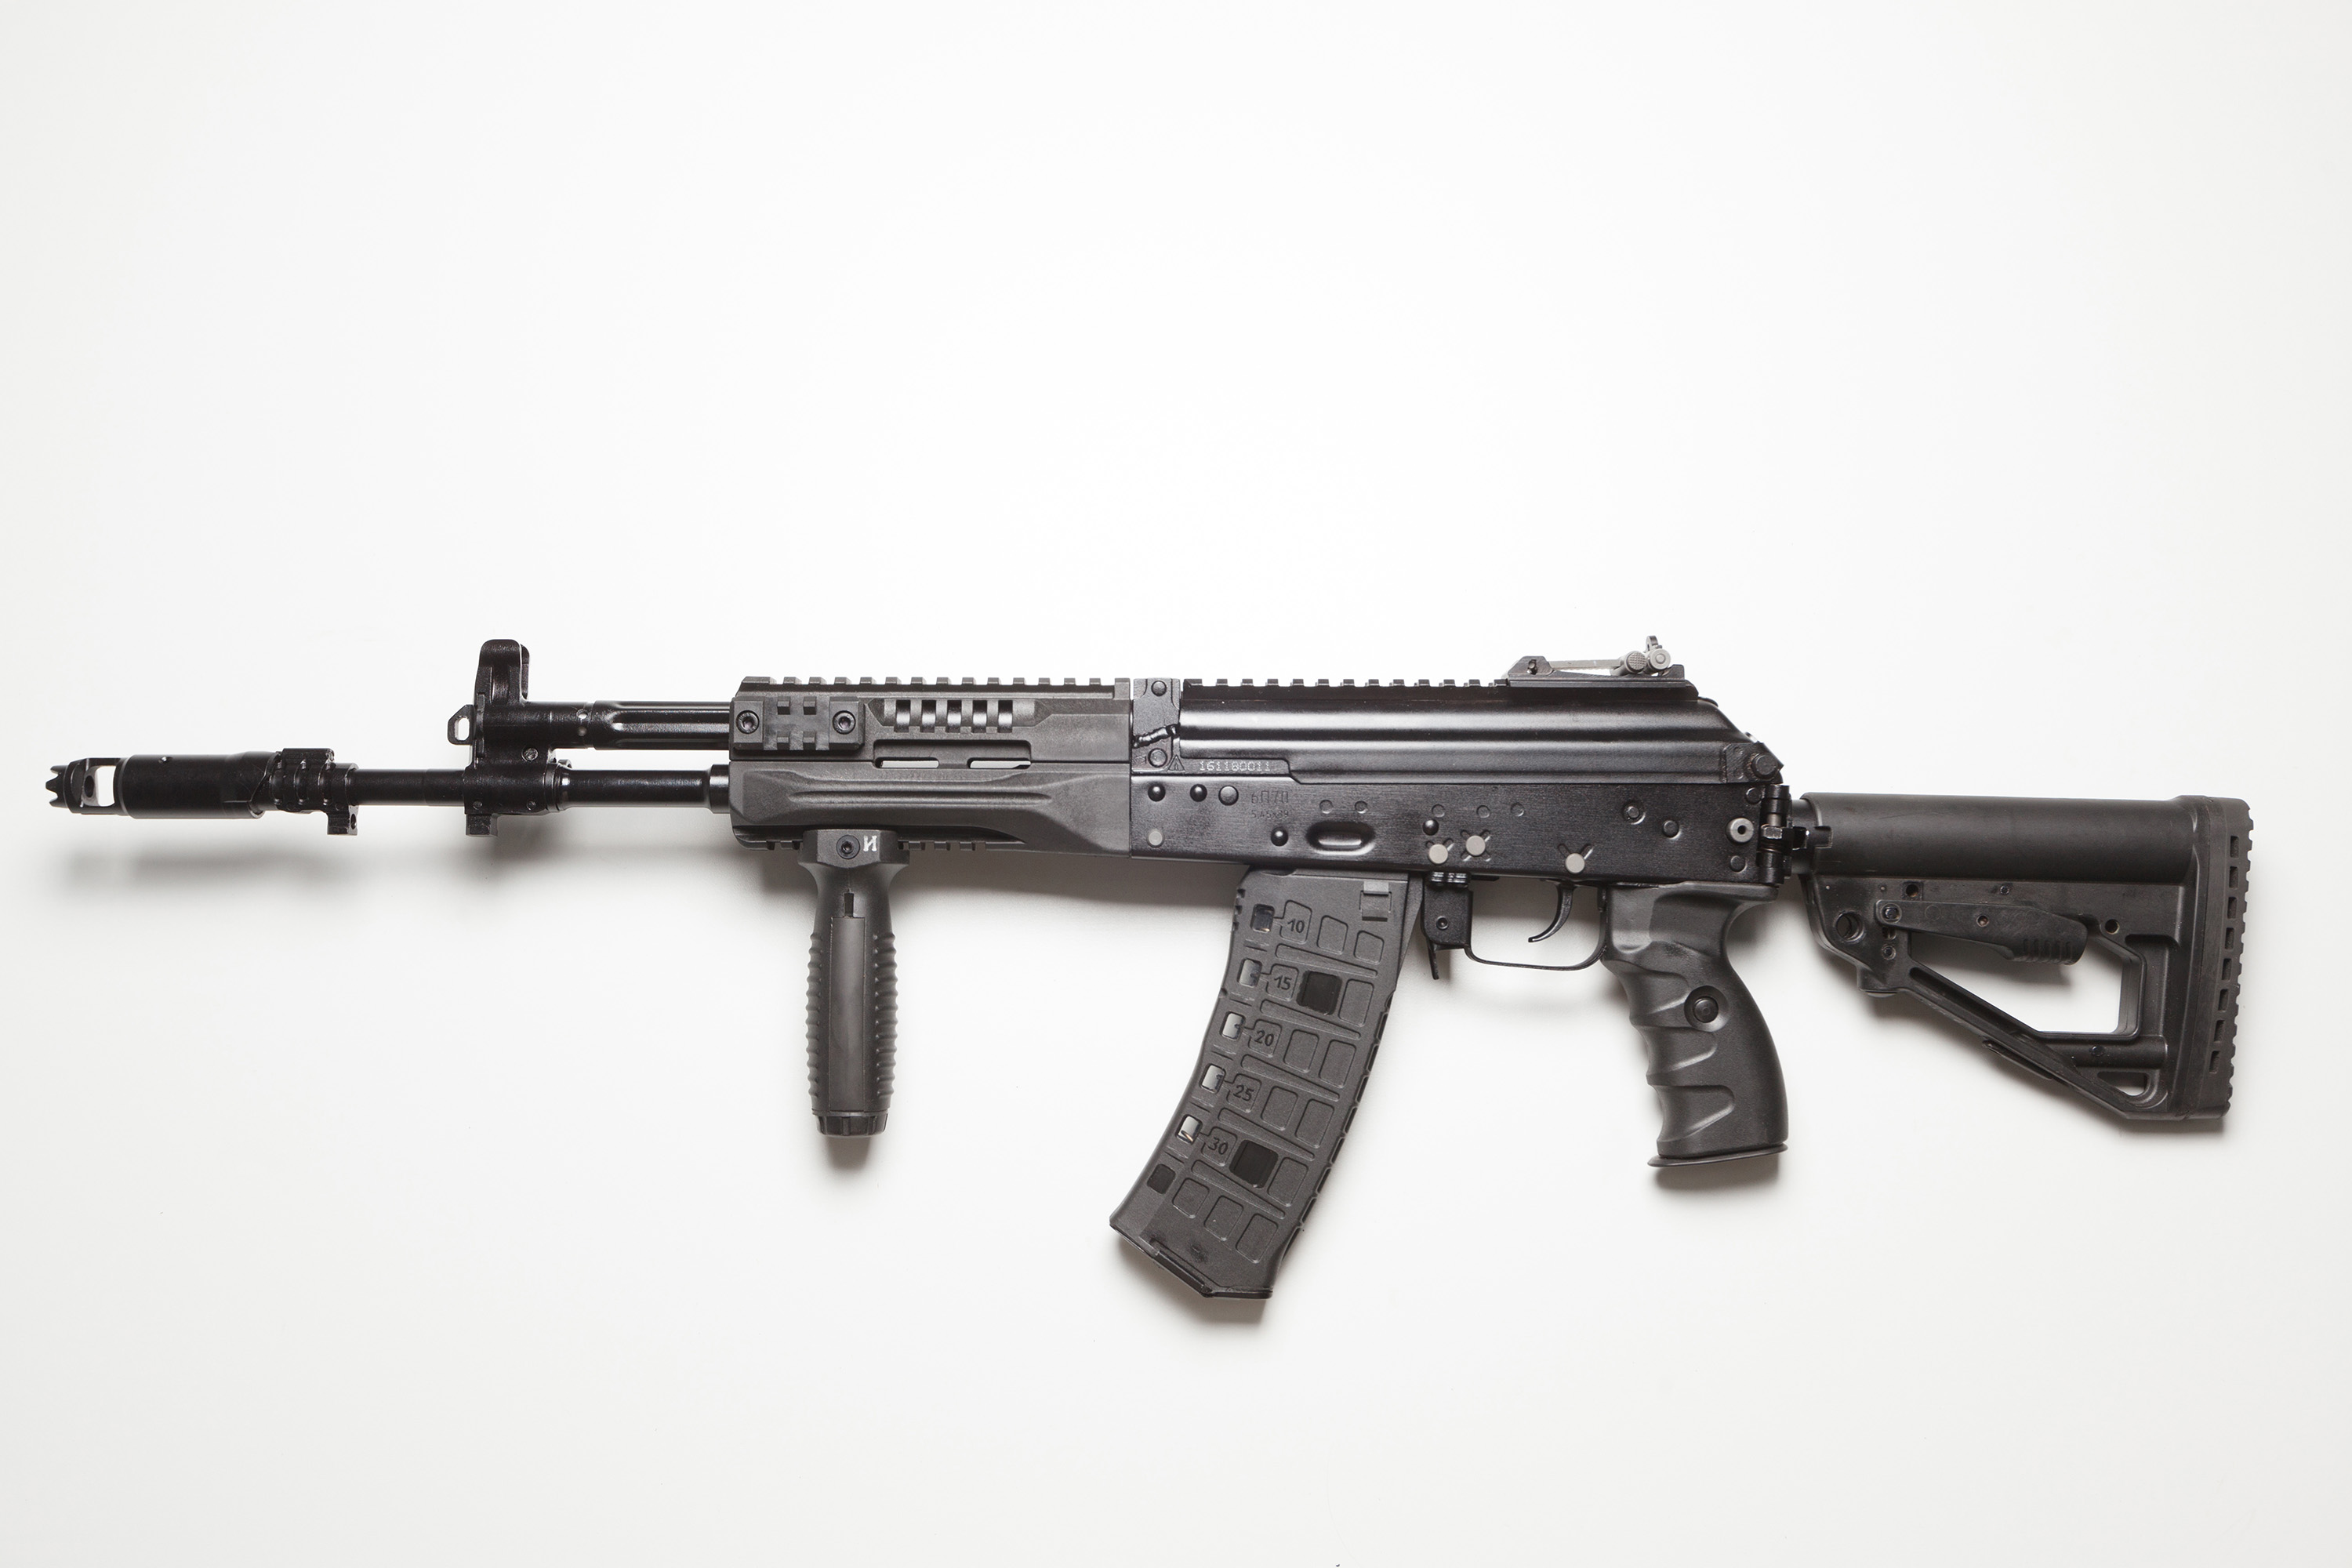 Ermenistan'da Kalaşnikof AK-12 ve AK-15 tüfekleri üretilecek